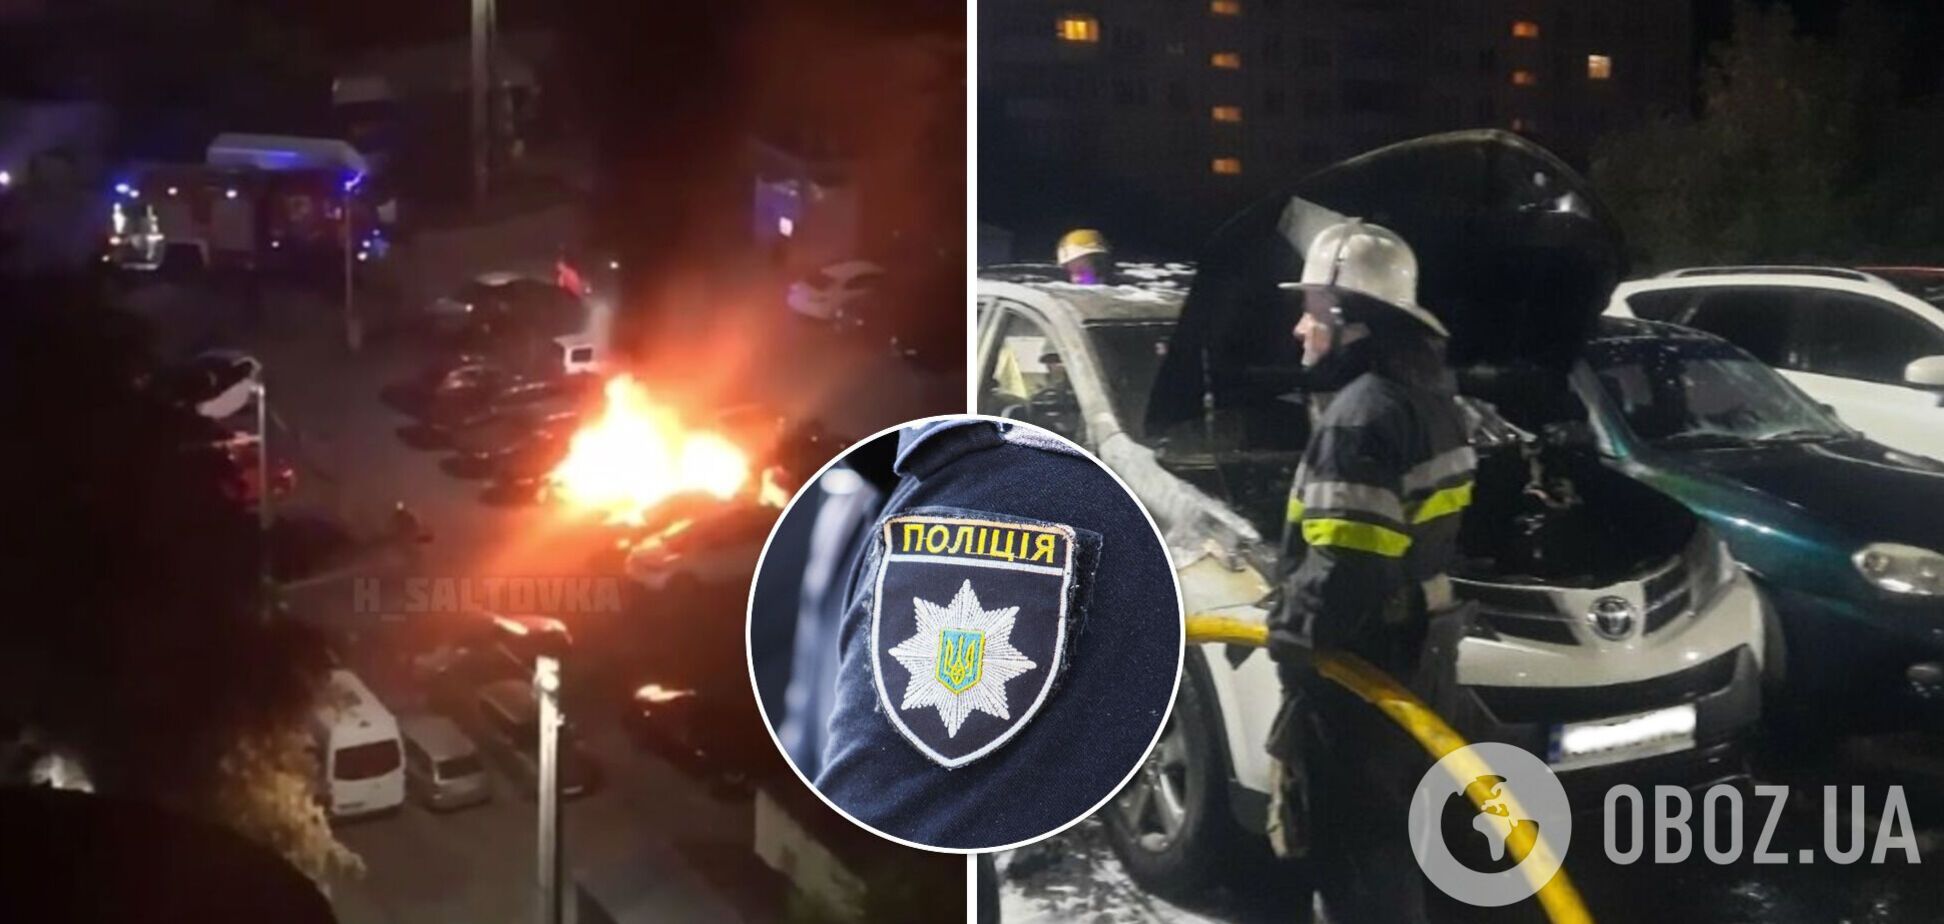 В Харькове сгорел автомобиль начальника отдела полиции, огонь перекинулся еще на 5 авто. Фото и видео